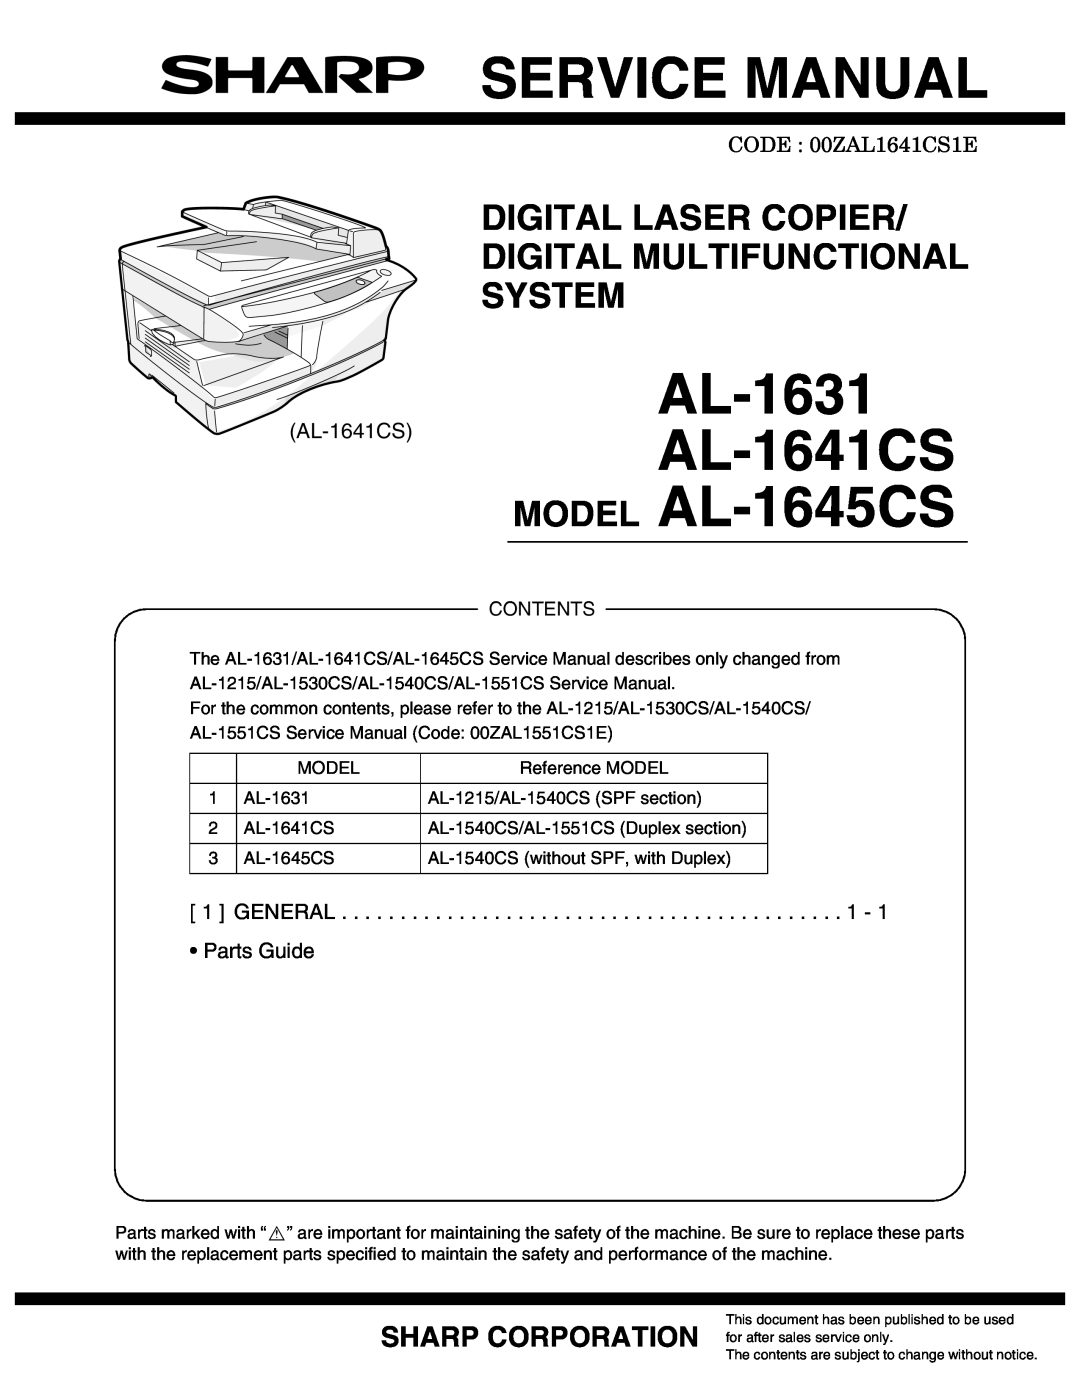 Sharp service manual Service Manual, AL-1631 AL-1641CS MODEL AL-1645CS, Sharp Corporation, Parts Guide 